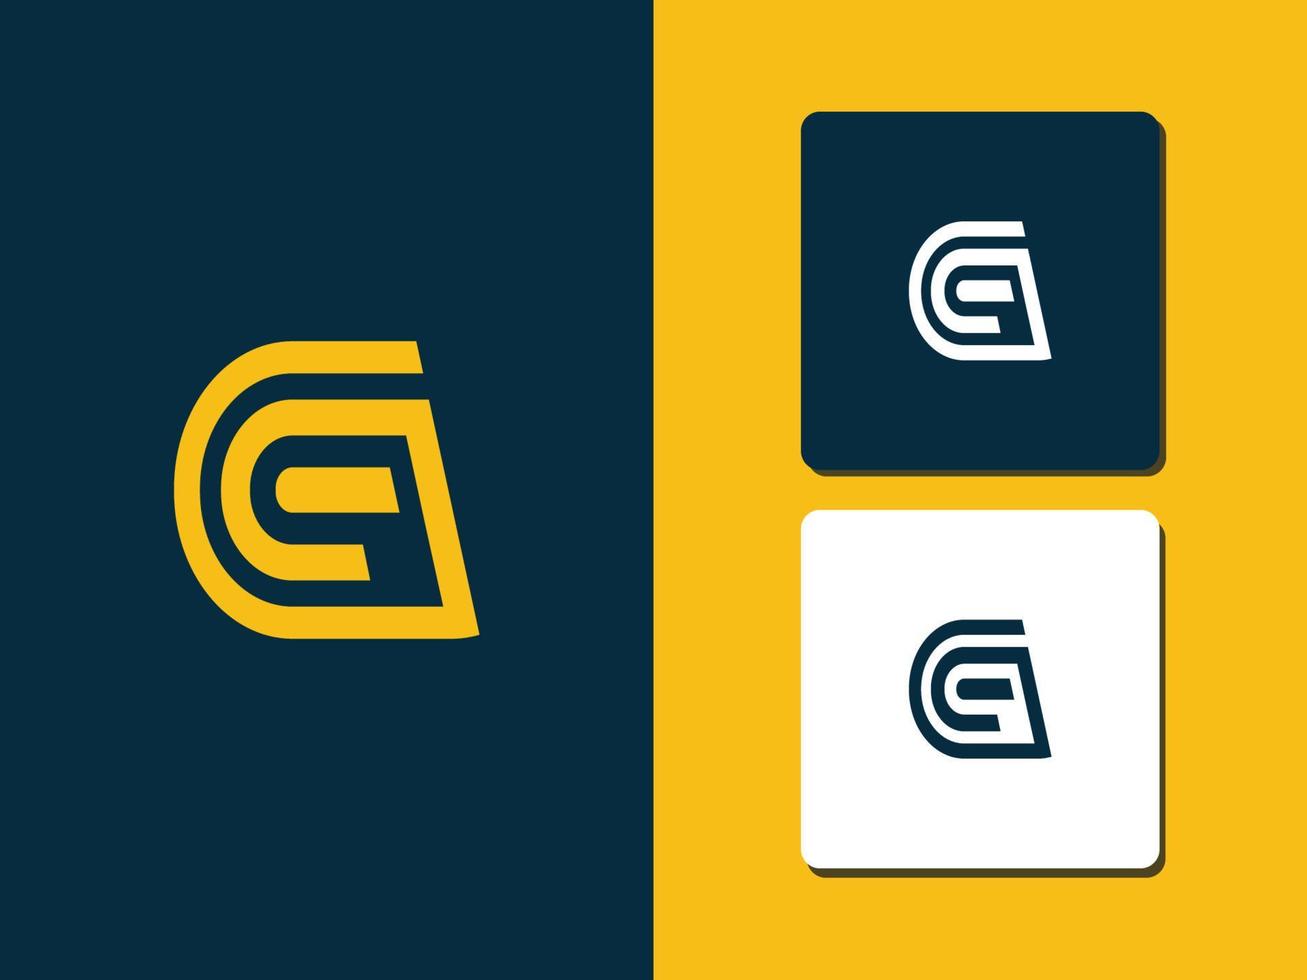 lettera g logo concetto pro vettore